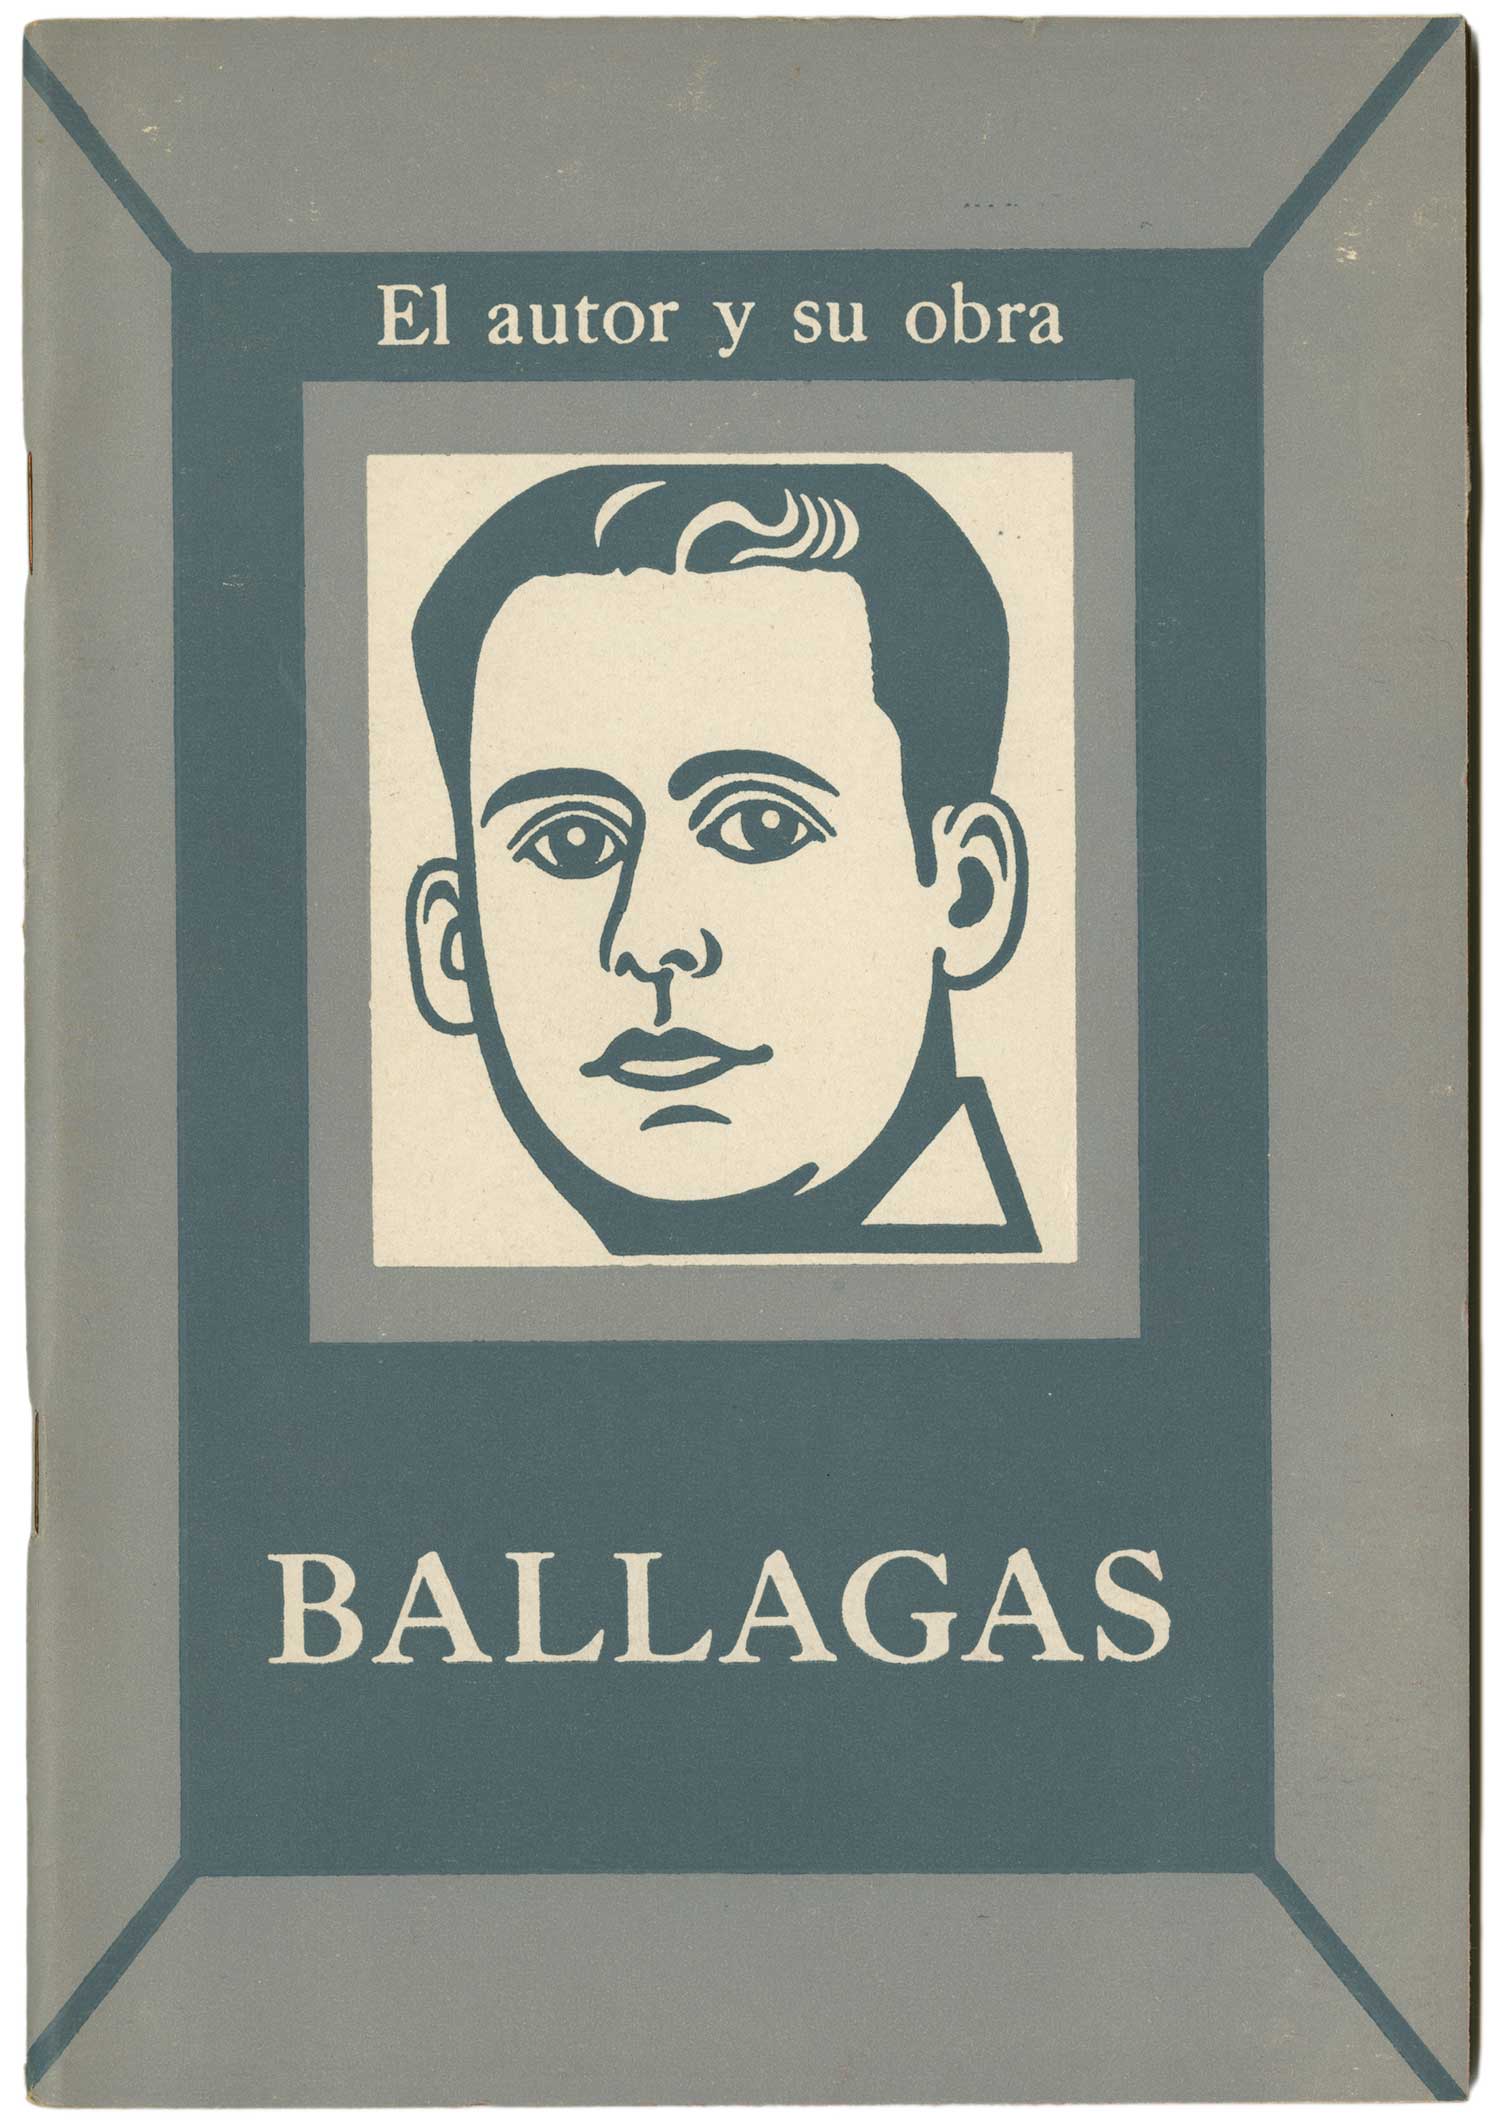 ElAutor_Ballagas